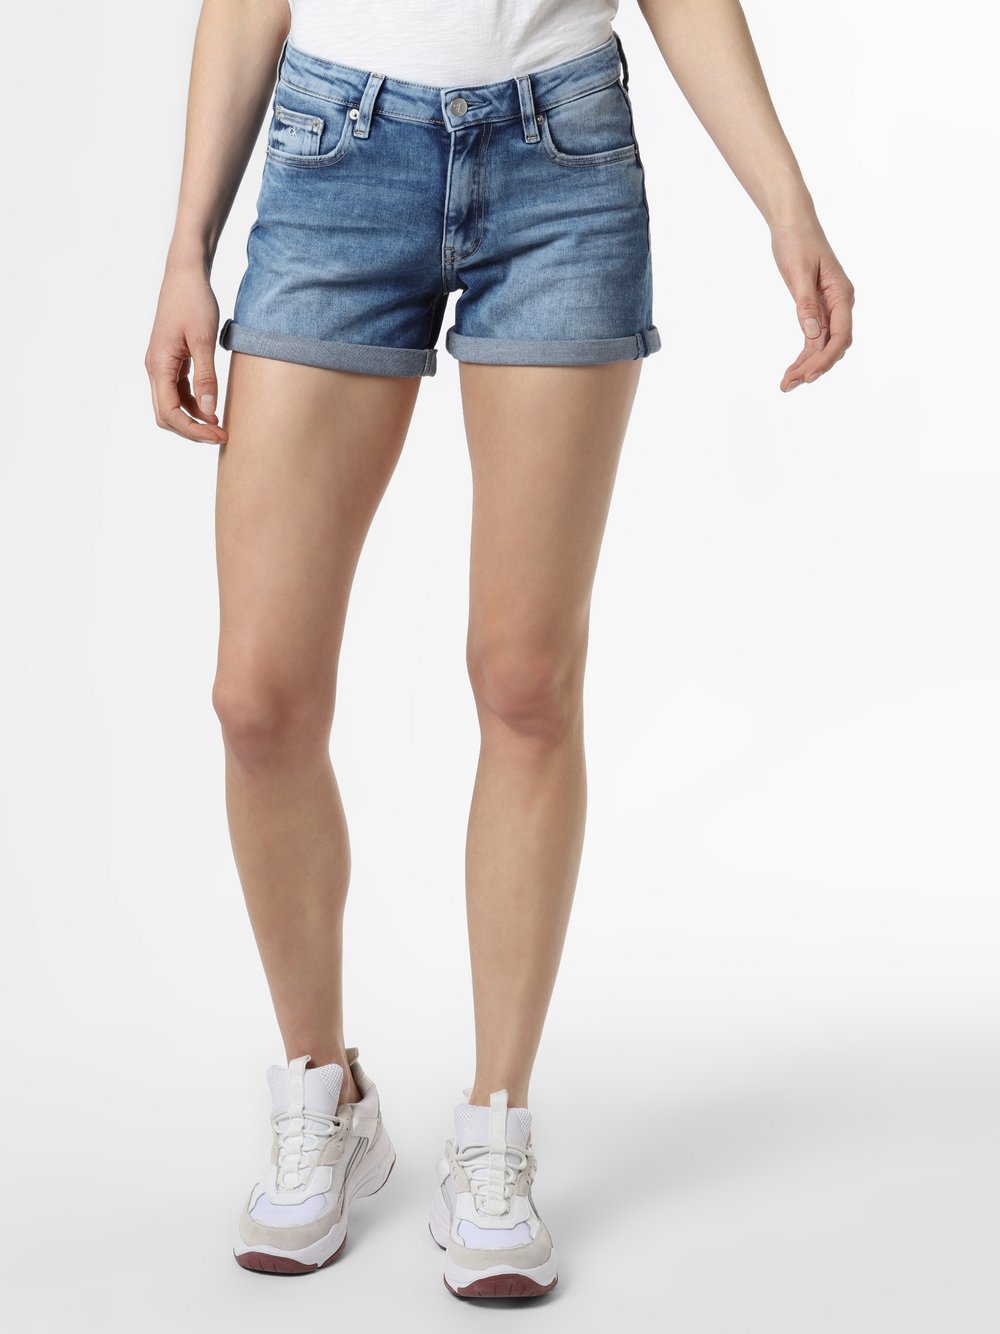 Calvin Klein Jeans - Damskie krótkie spodenki jeansowe, niebieski